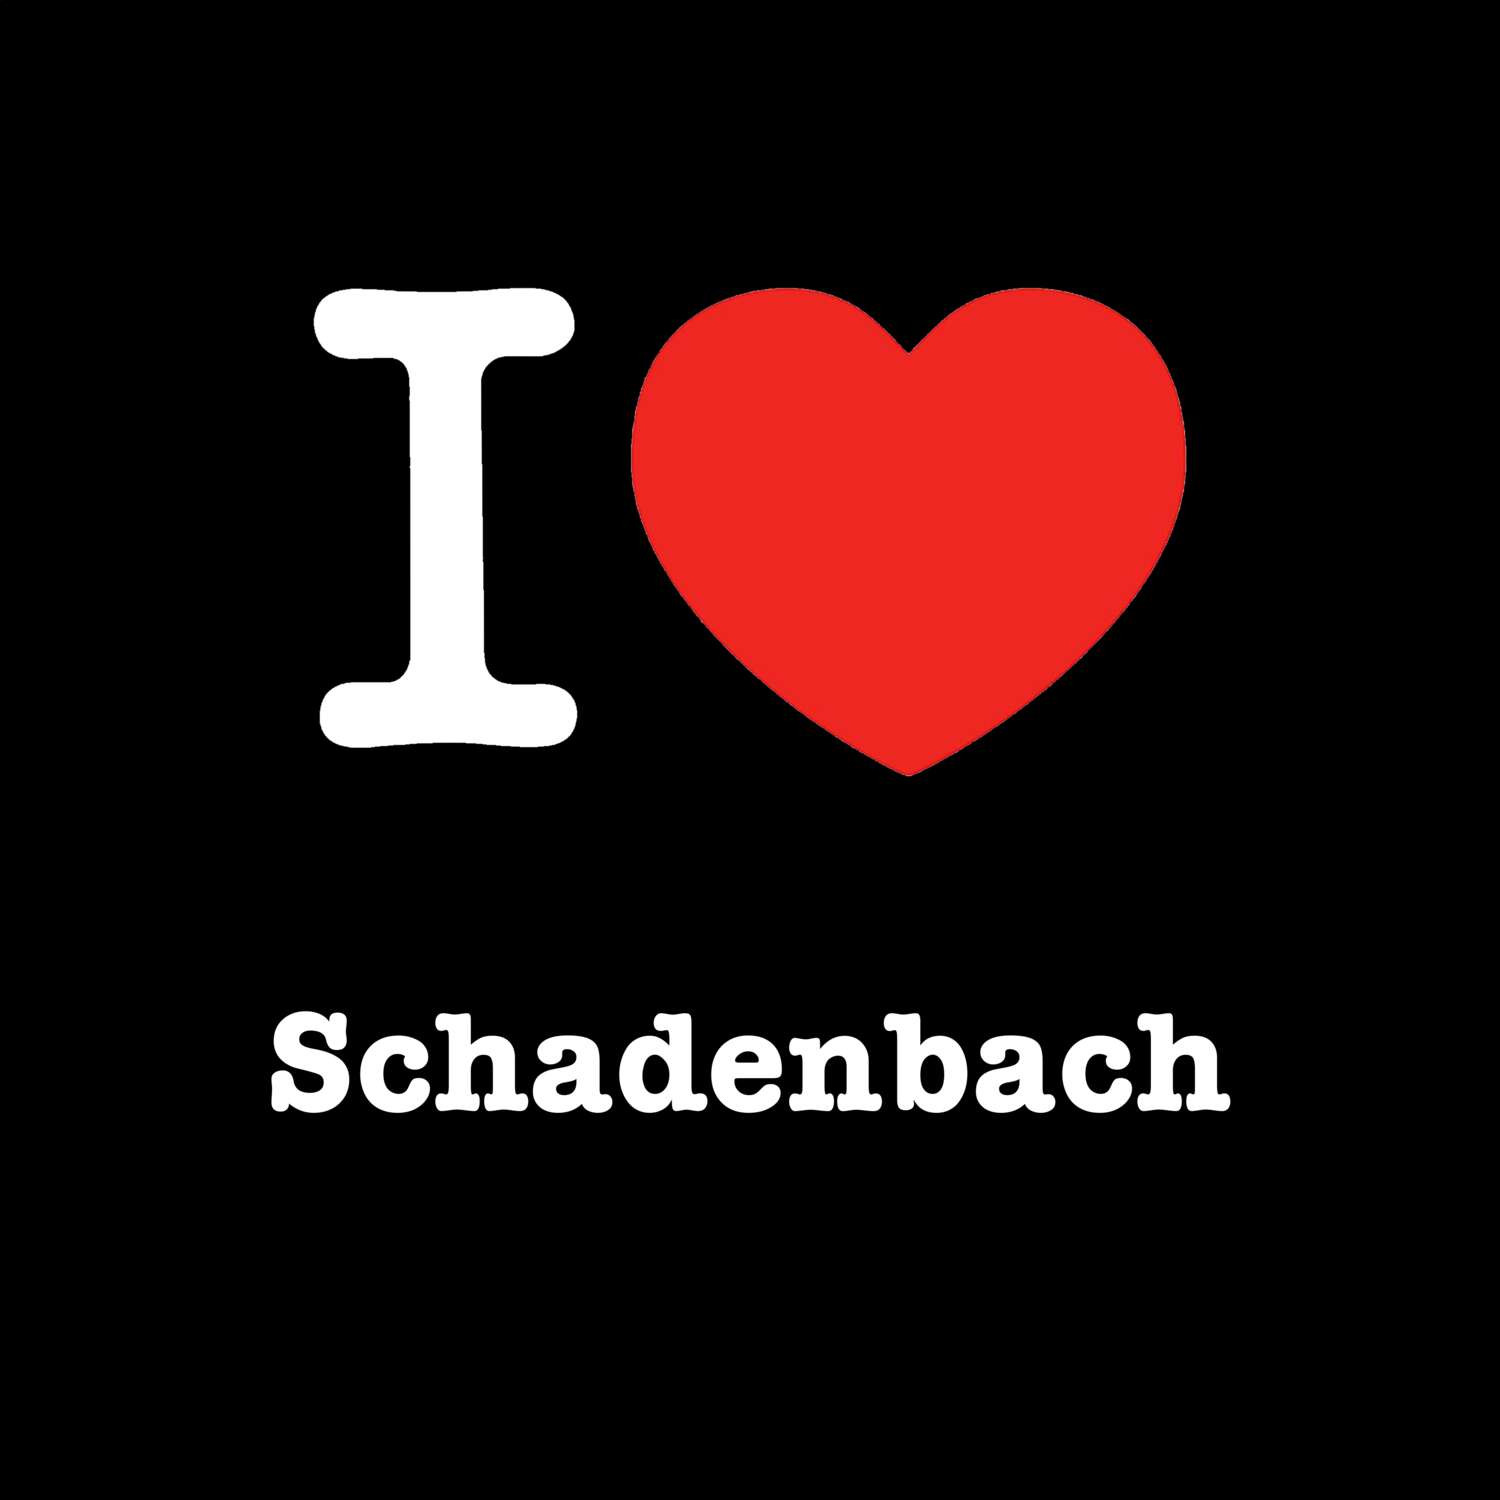 Schadenbach T-Shirt »I love«